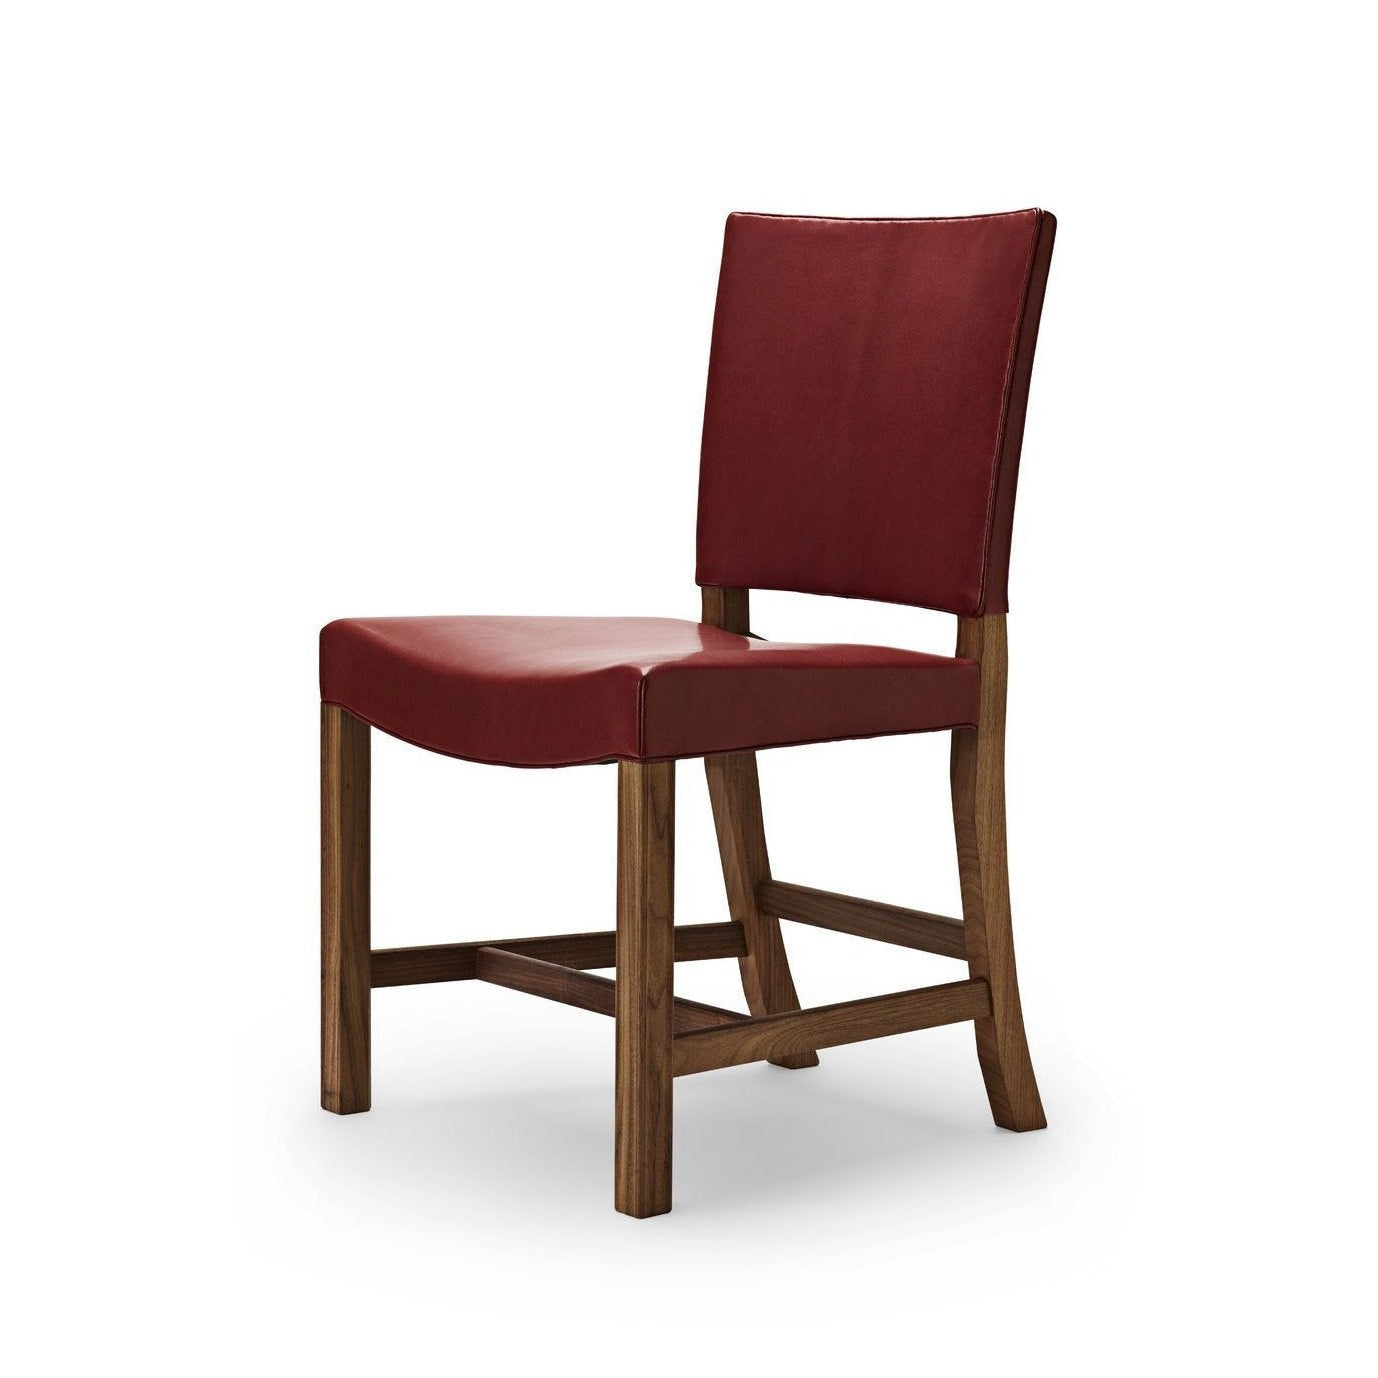 Carl Hansen KK47510 den røde stol, lakeret valnød/rød gedeskind